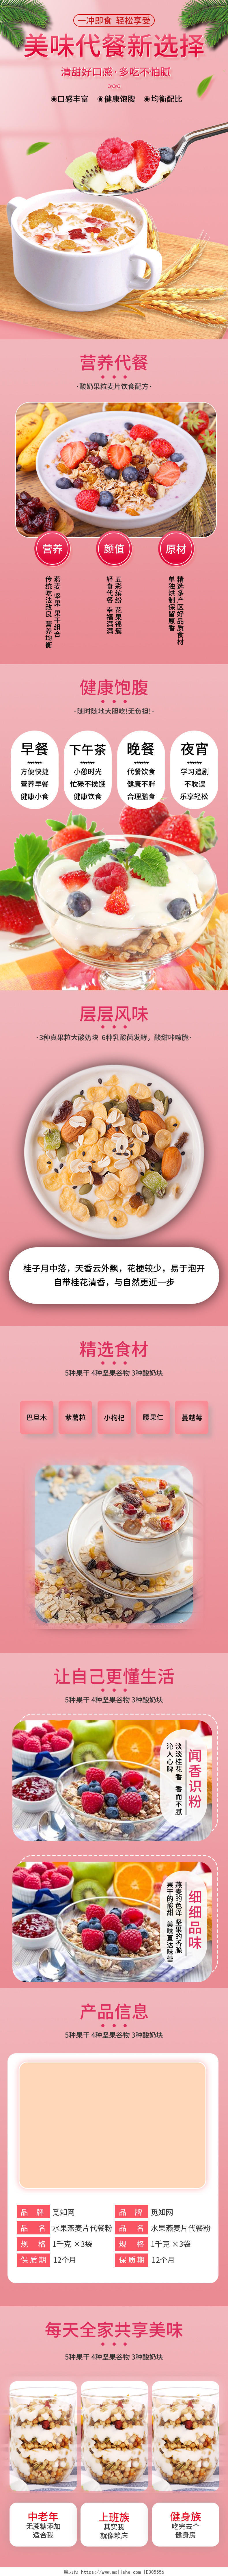 粉色简约小清新美味代餐水果燕麦片美食促销电商麦片详情页